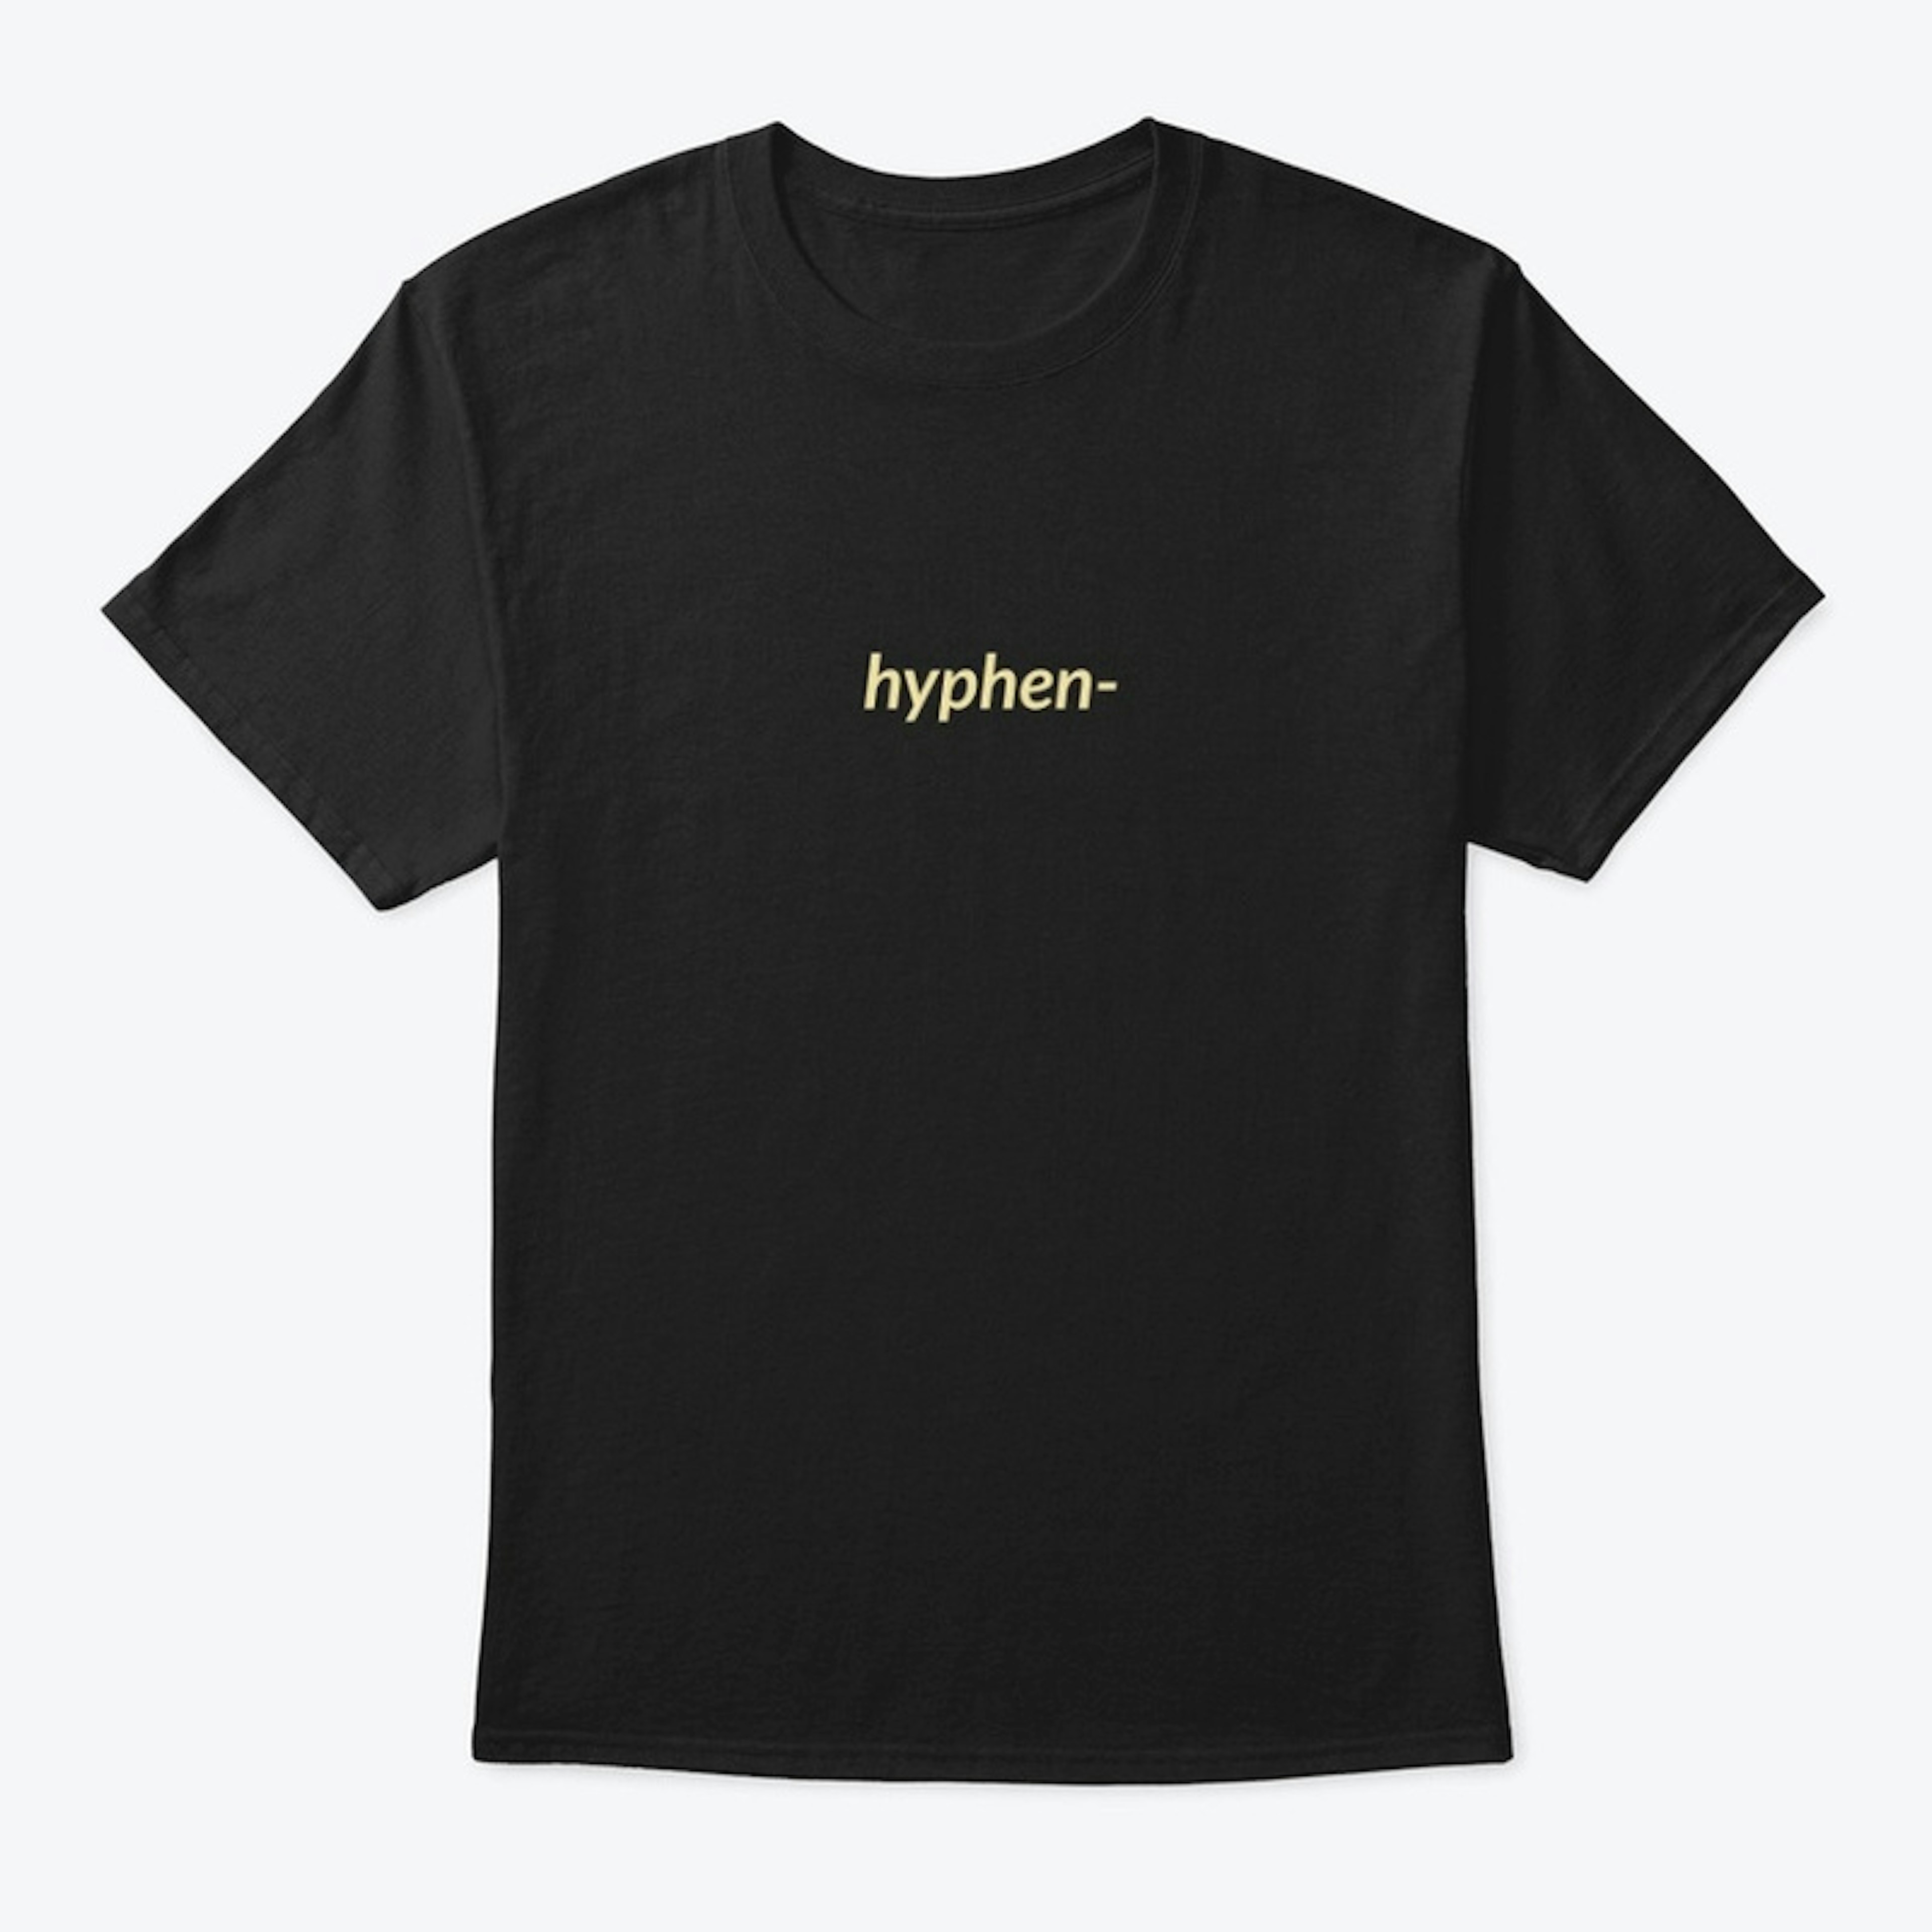 hyphen-